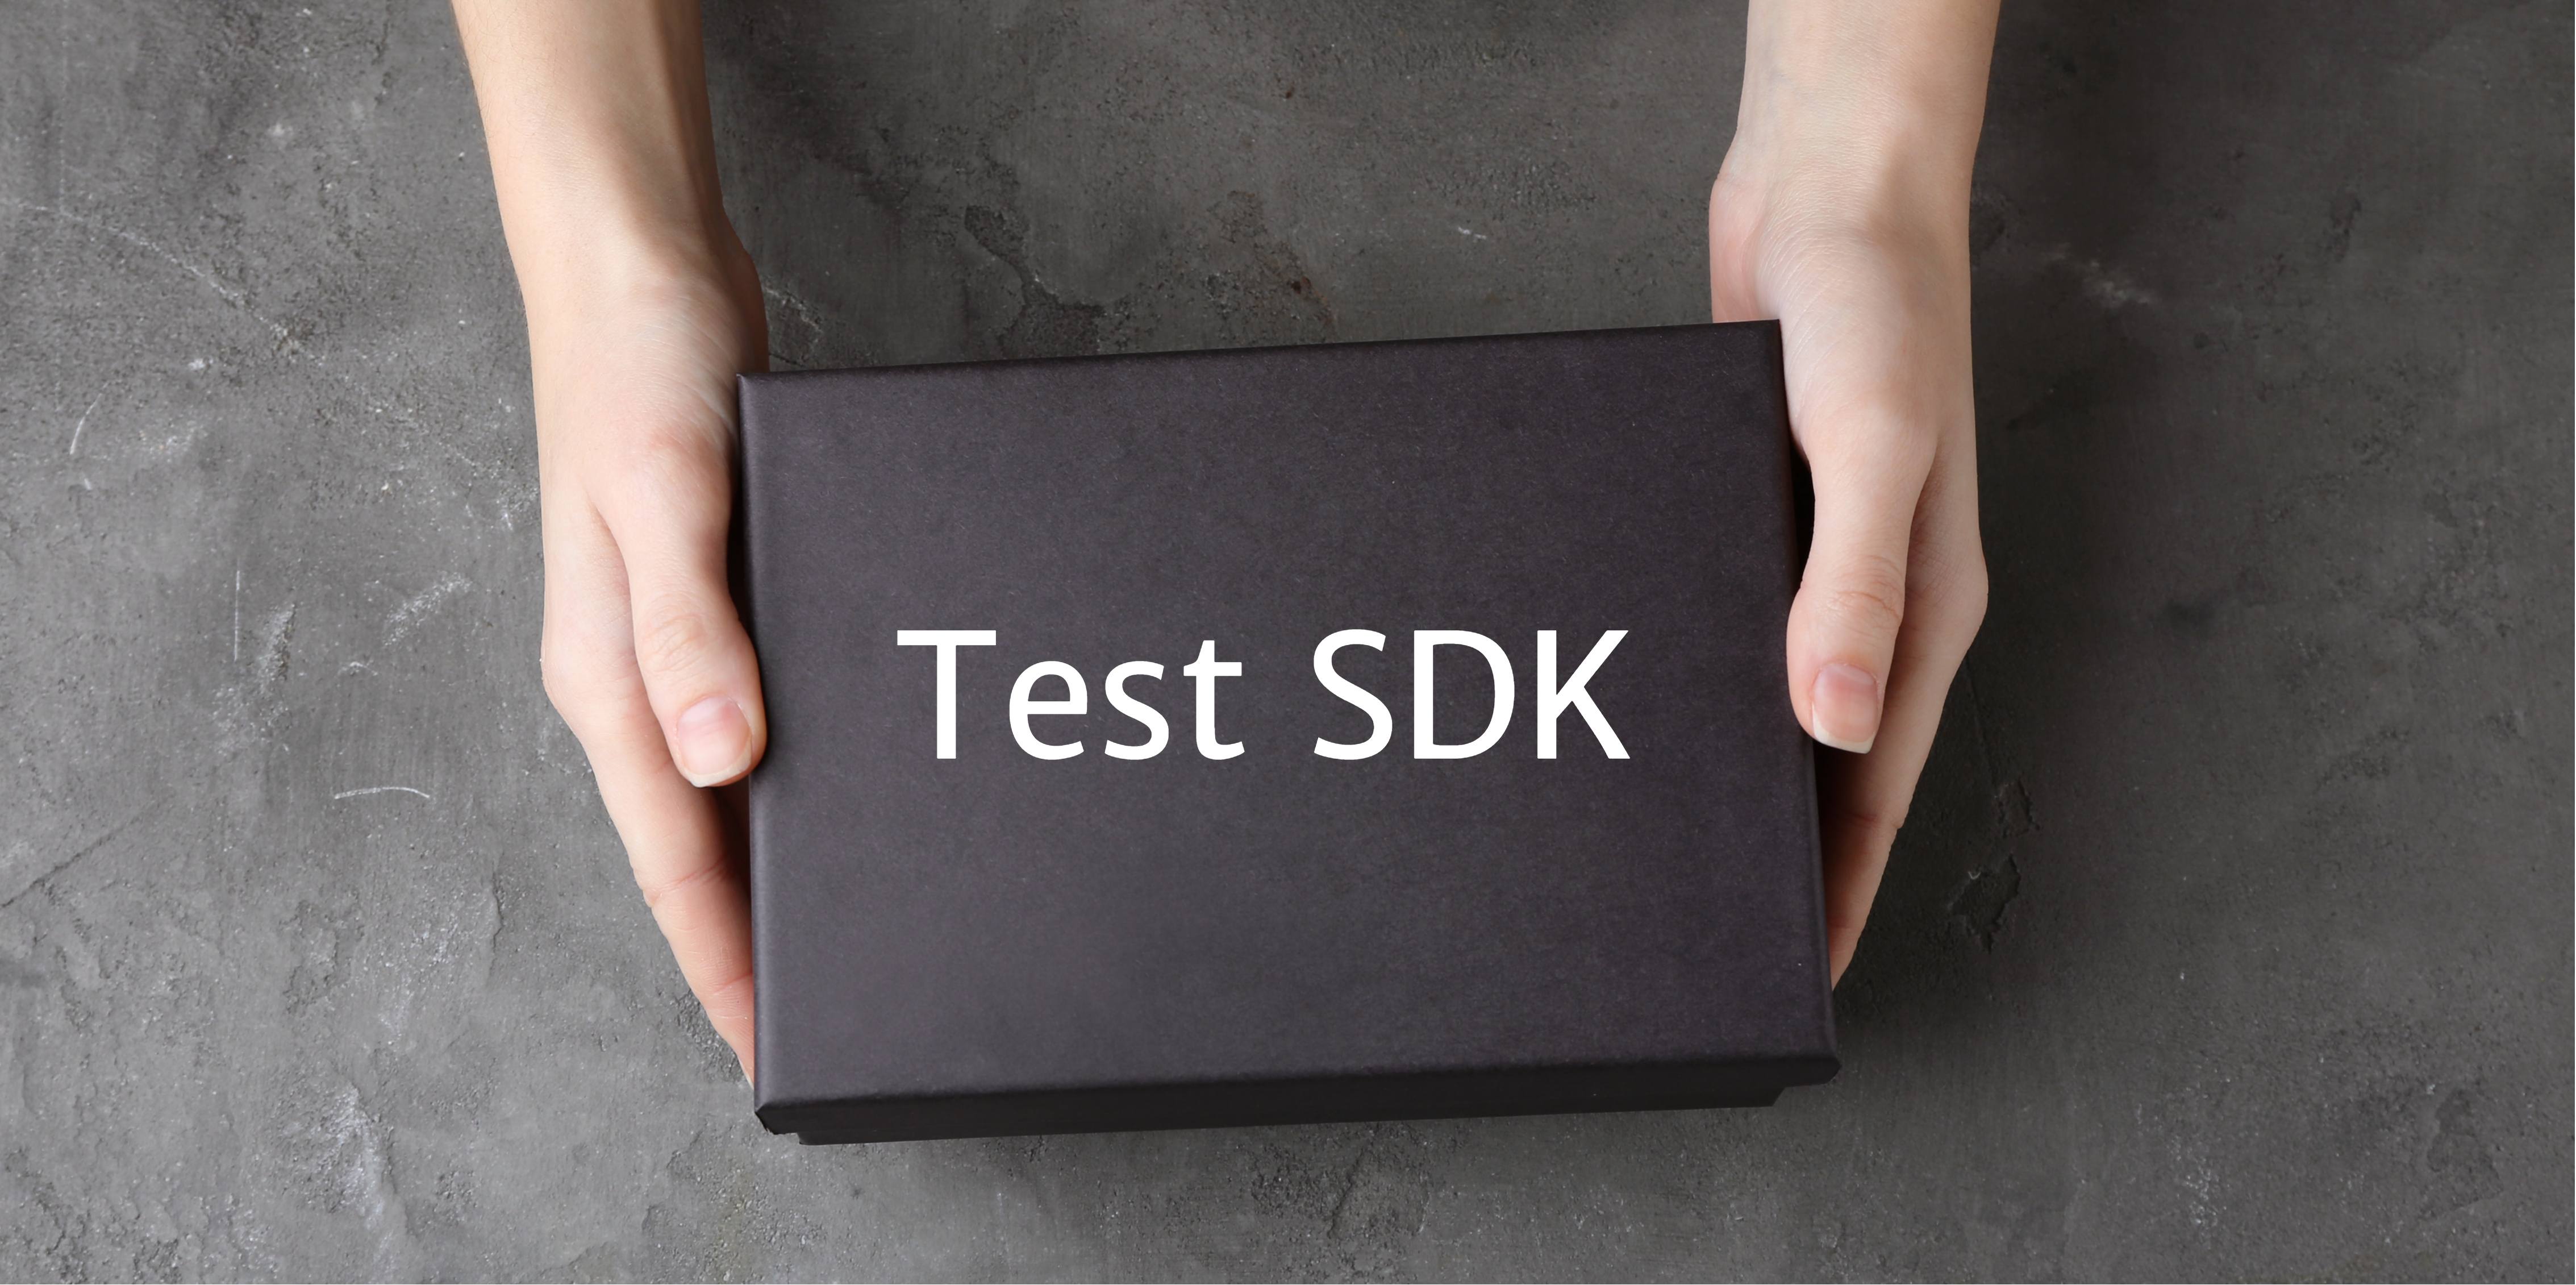 Acumatica Test SDK: Obtenir plus d’entrées